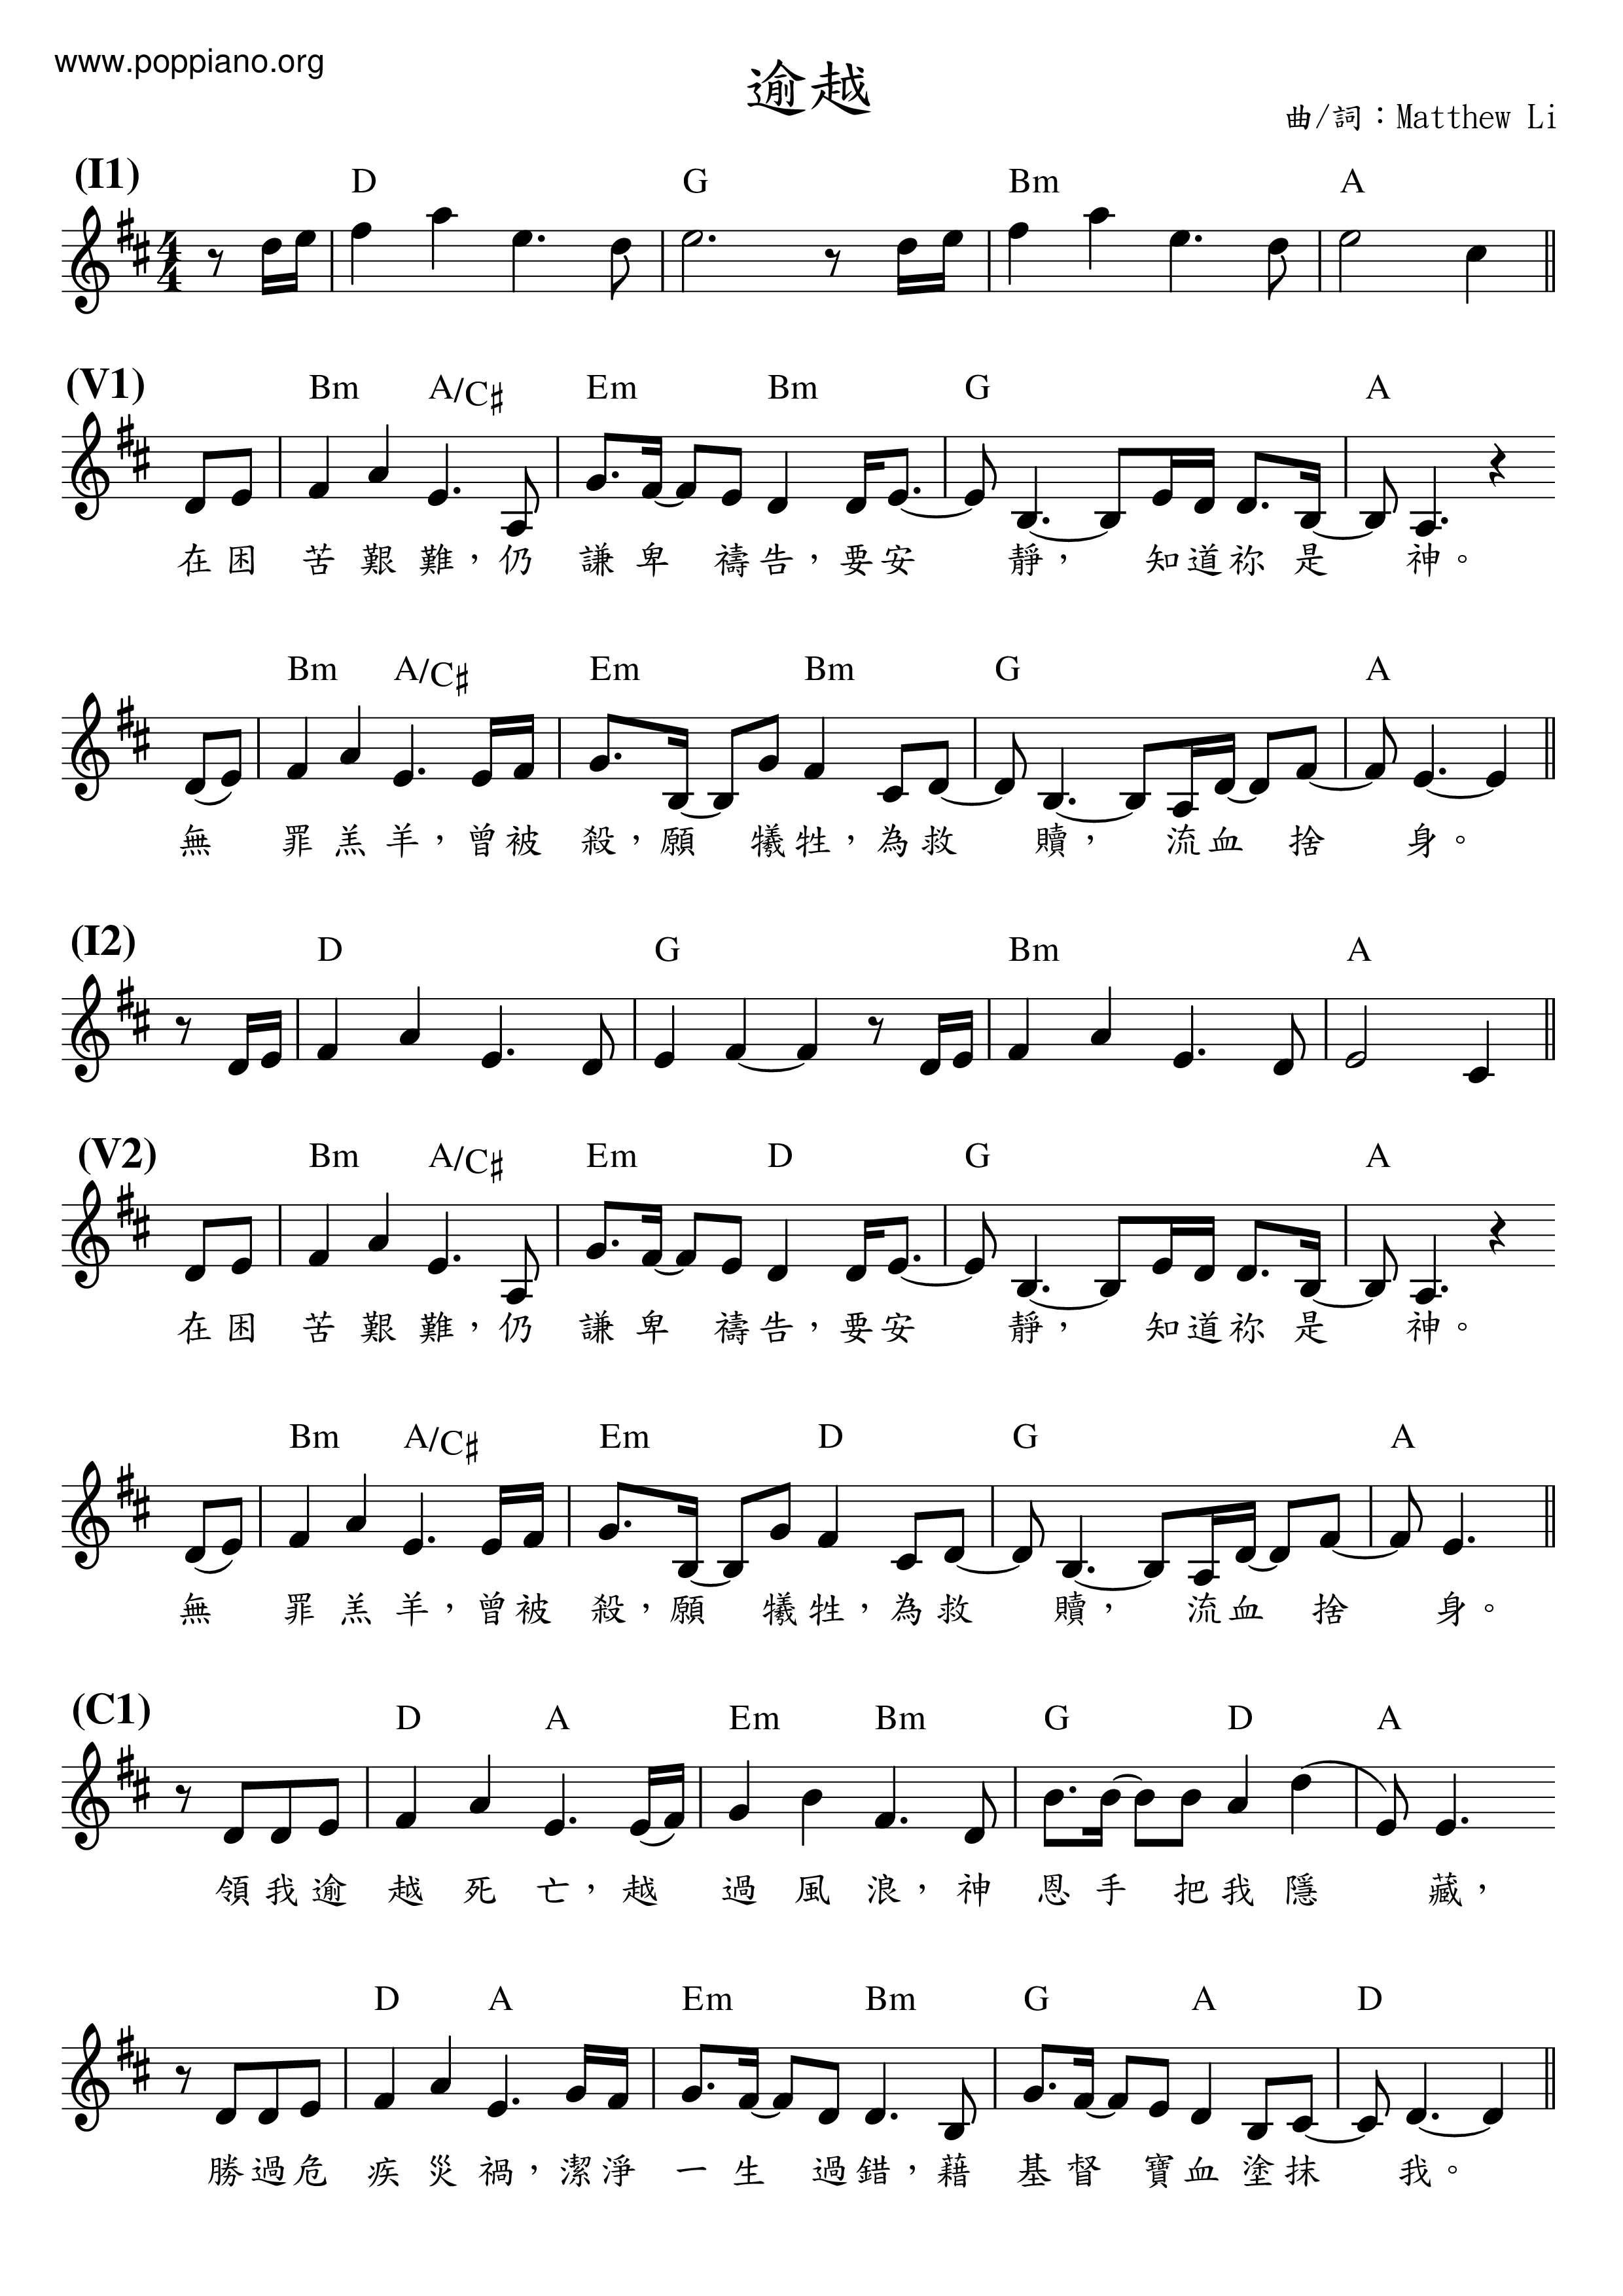 hymn-passover-sheet-music-pdf-free-score-download